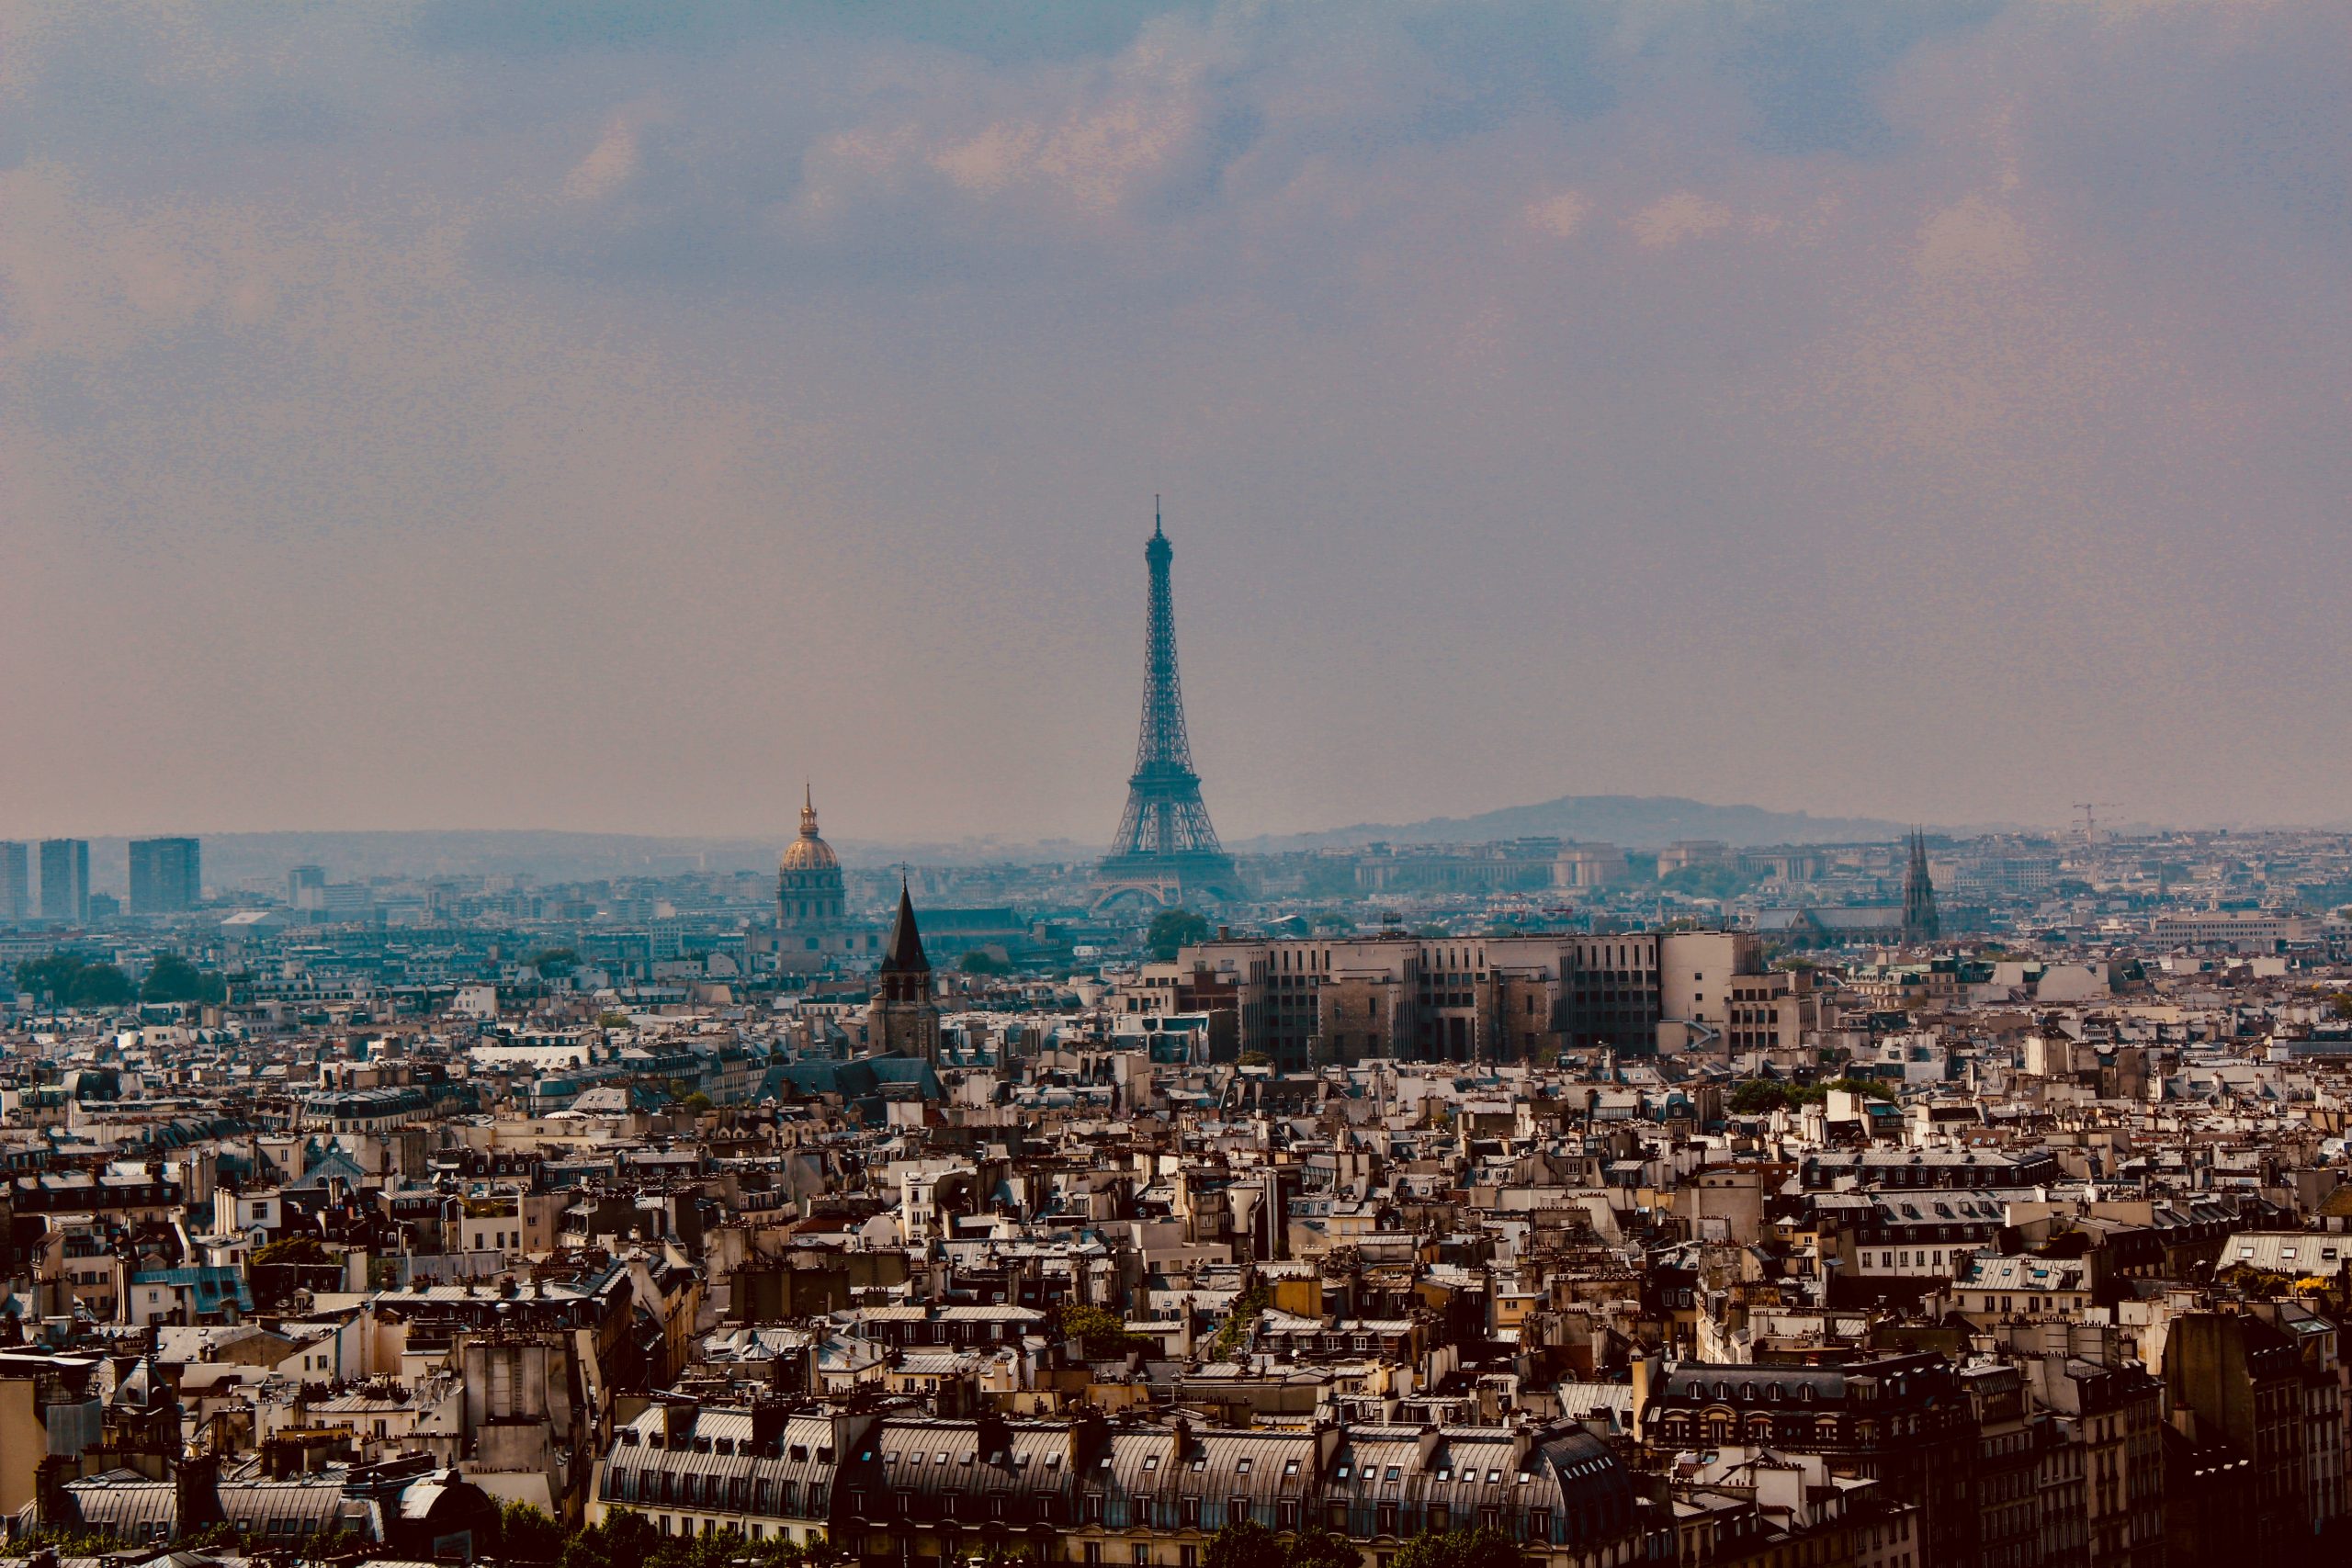 Paris France Photo by Chris Molloy: